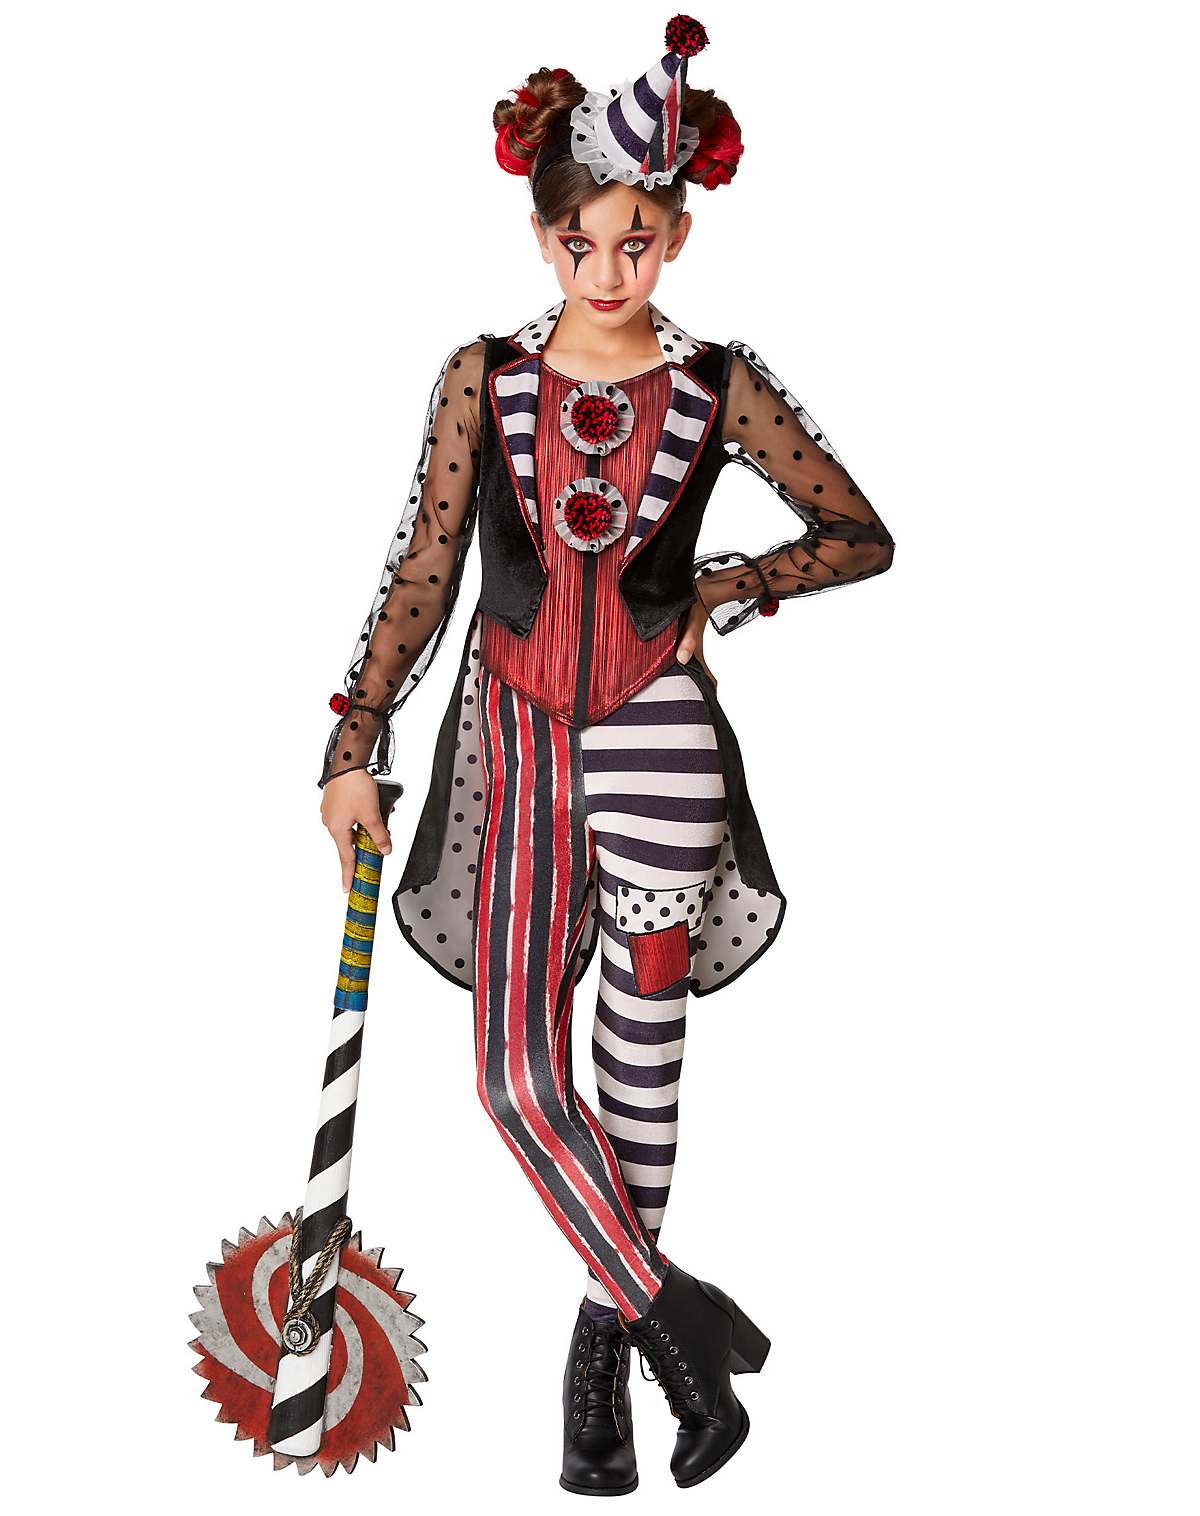 Tổng Hợp 27 Art The Clown Costume Update - Bmxracingthailand.com